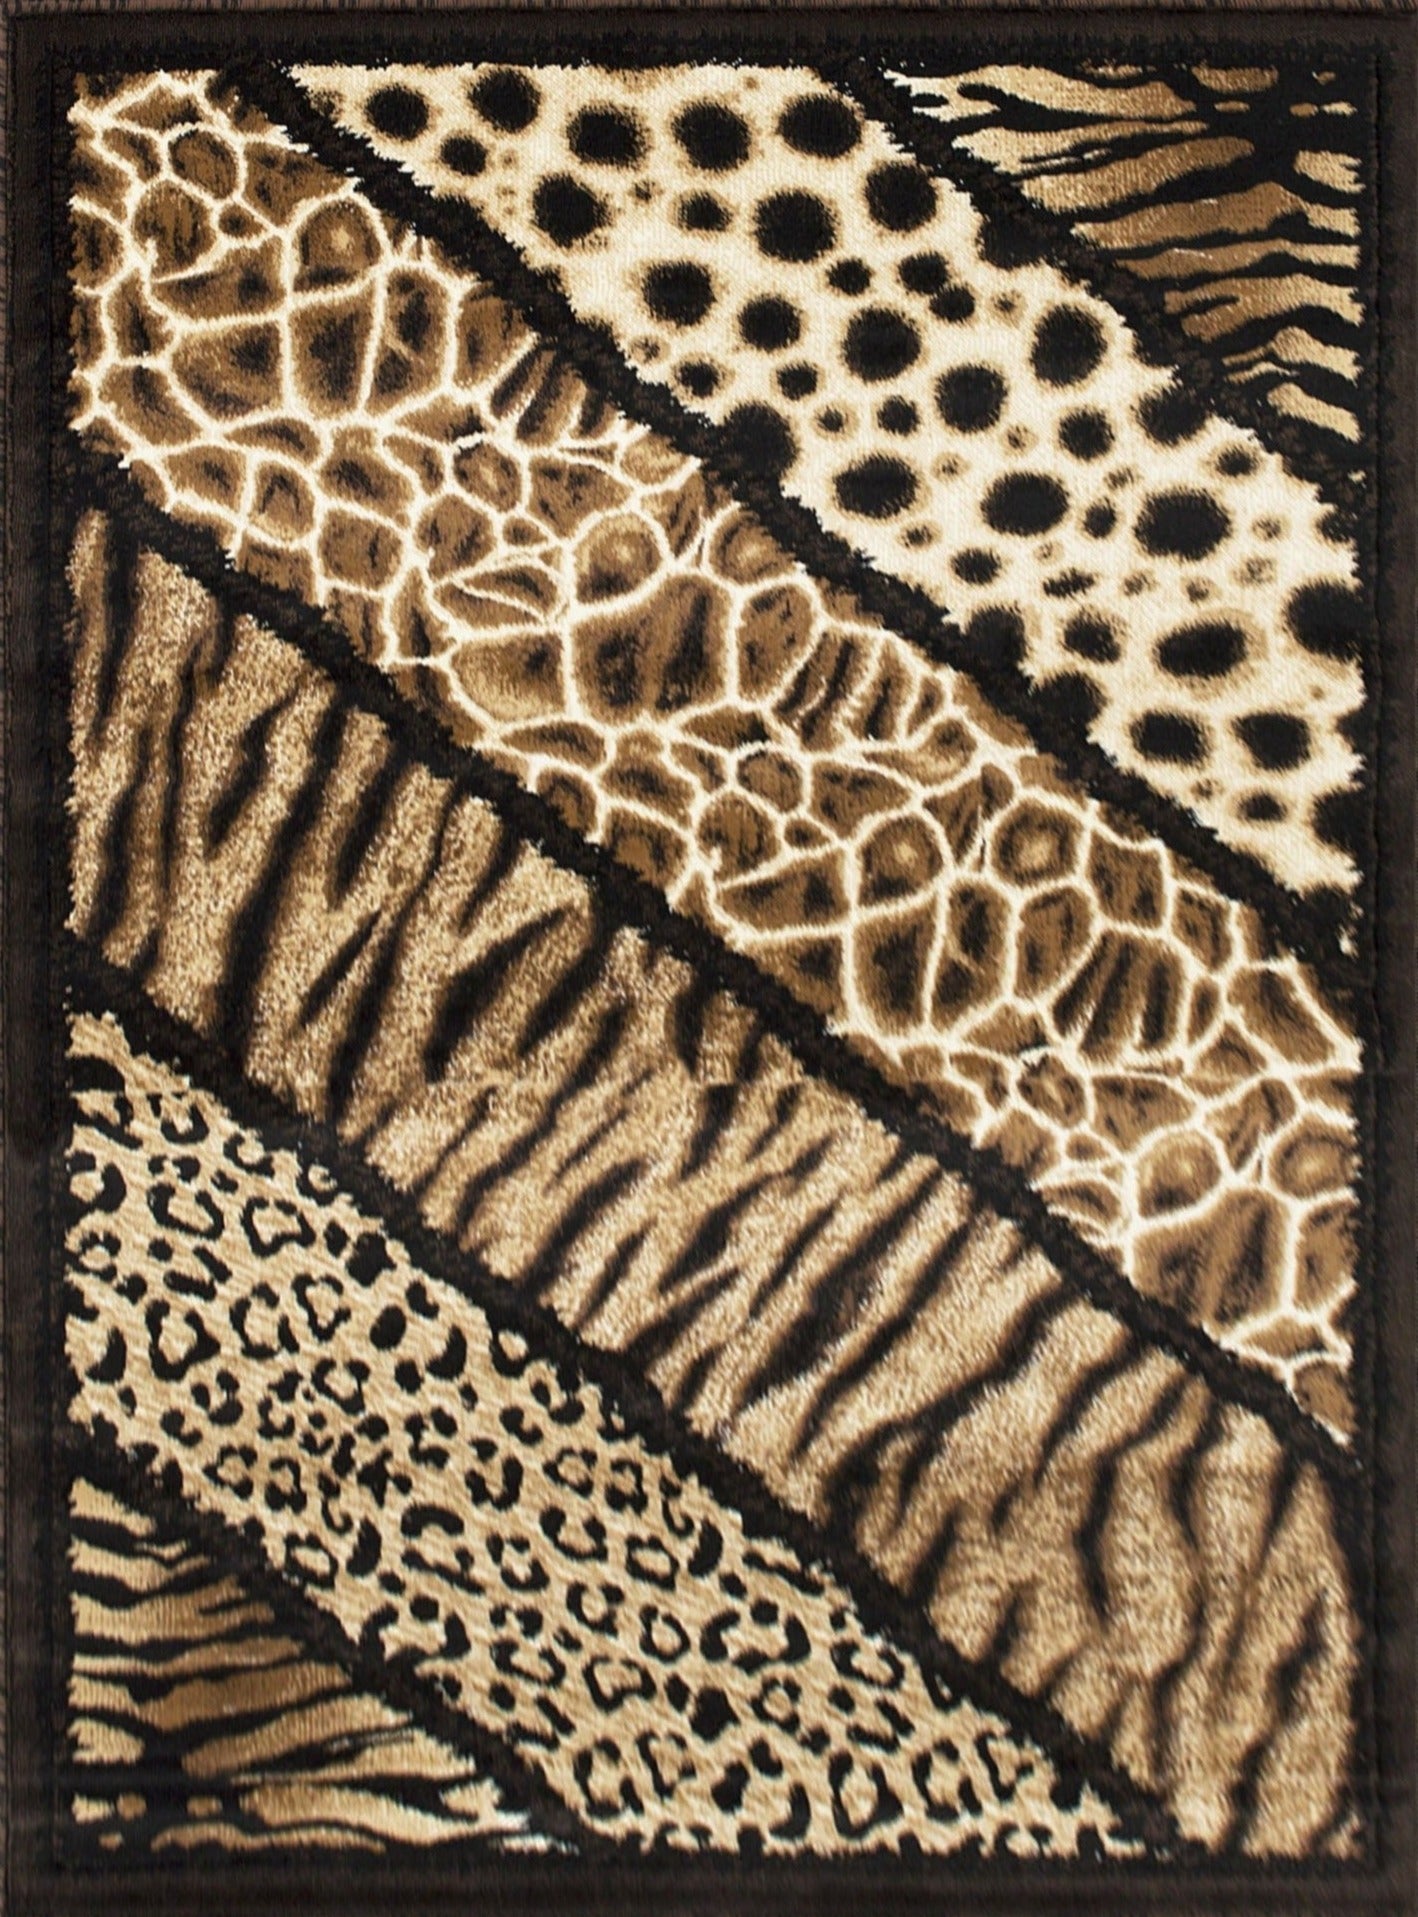 American cover design / Persian weavers Skinz-75 Animal Print Rug